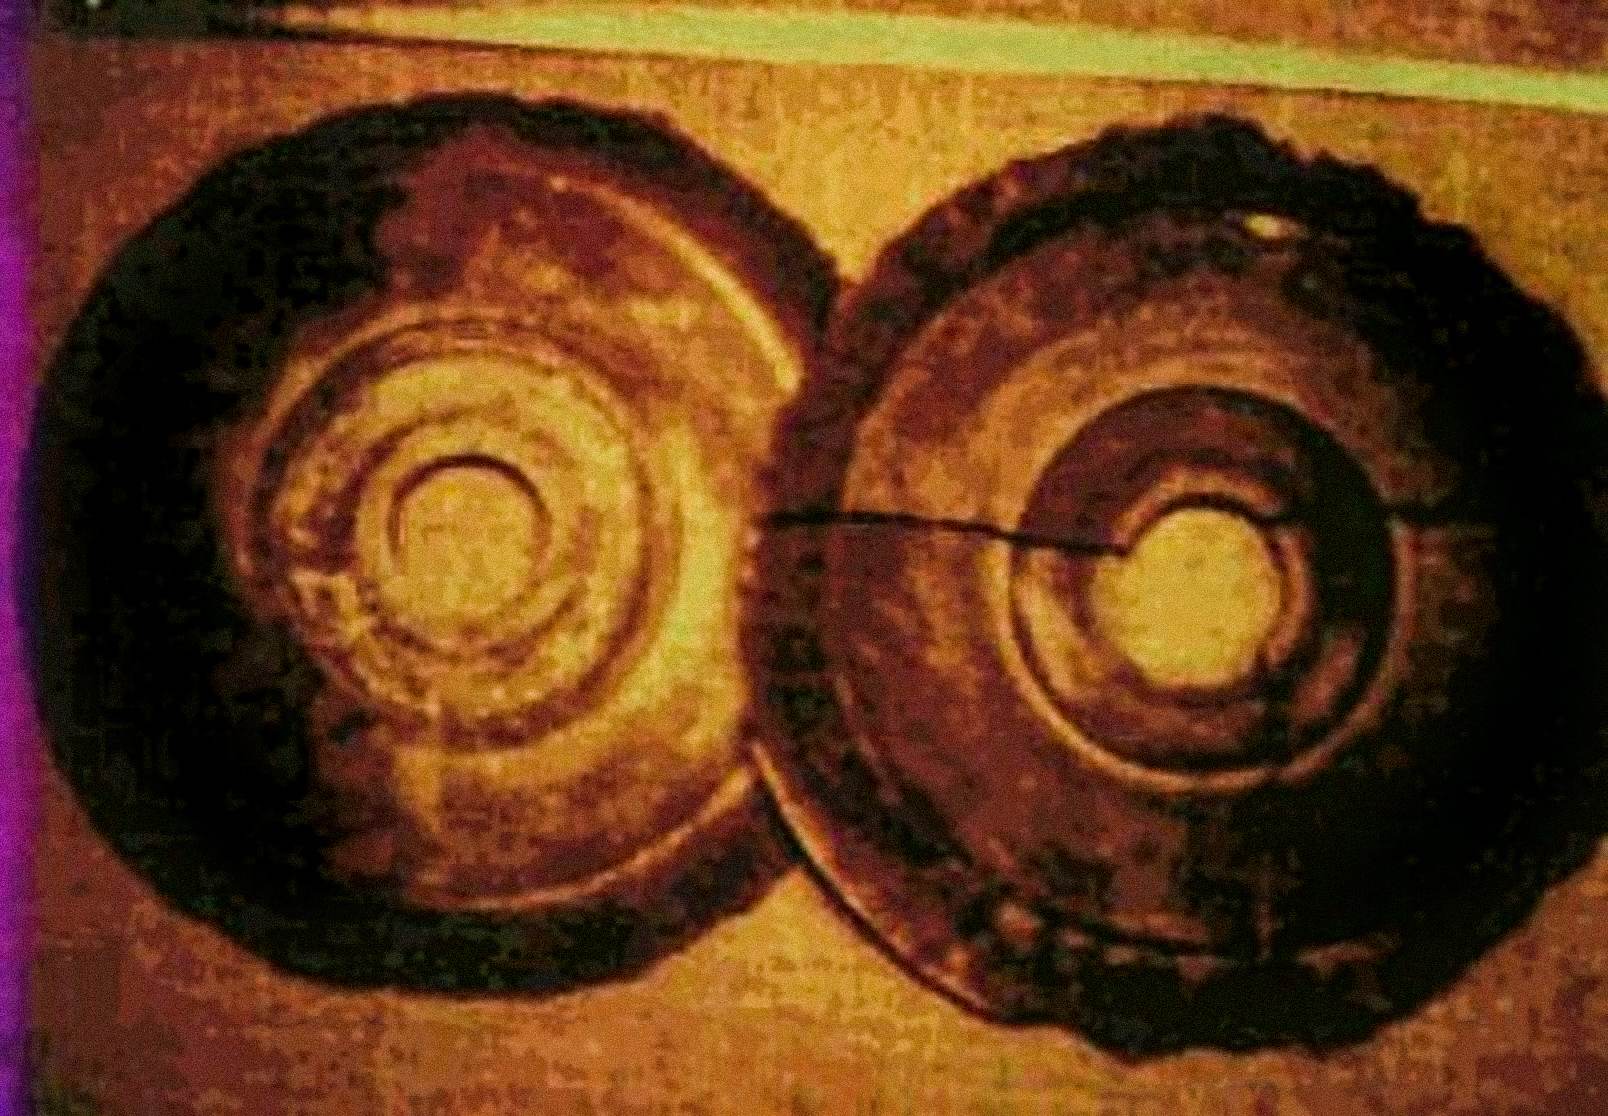 In 1974 fotografeerde Ernst Wegerer, een Oostenrijkse ingenieur, twee schijven die voldeden aan de beschrijvingen van de Dropa Stones. Hij was op een rondleiding door het Banpo-Museum in Xian, toen hij de stenen schijven zag tentoongesteld. Hij beweert dat hij een gat in het midden van elke schijf zag en hiërogliefen in gedeeltelijk afgebrokkelde spiraalvormige groeven.